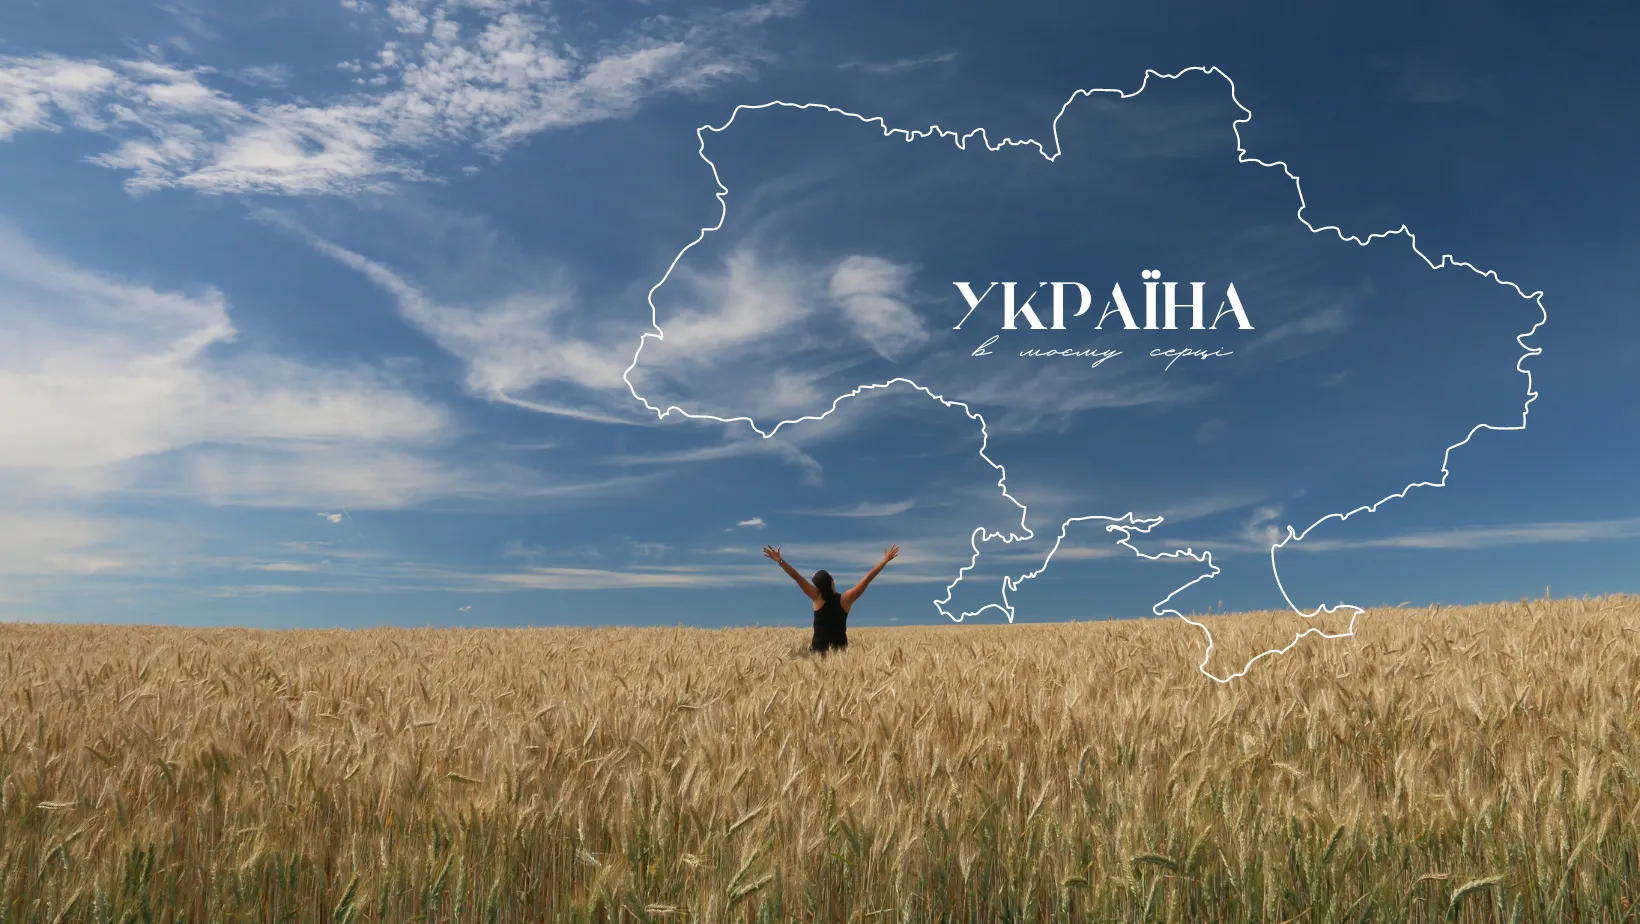 Цікаві факти про гімн України